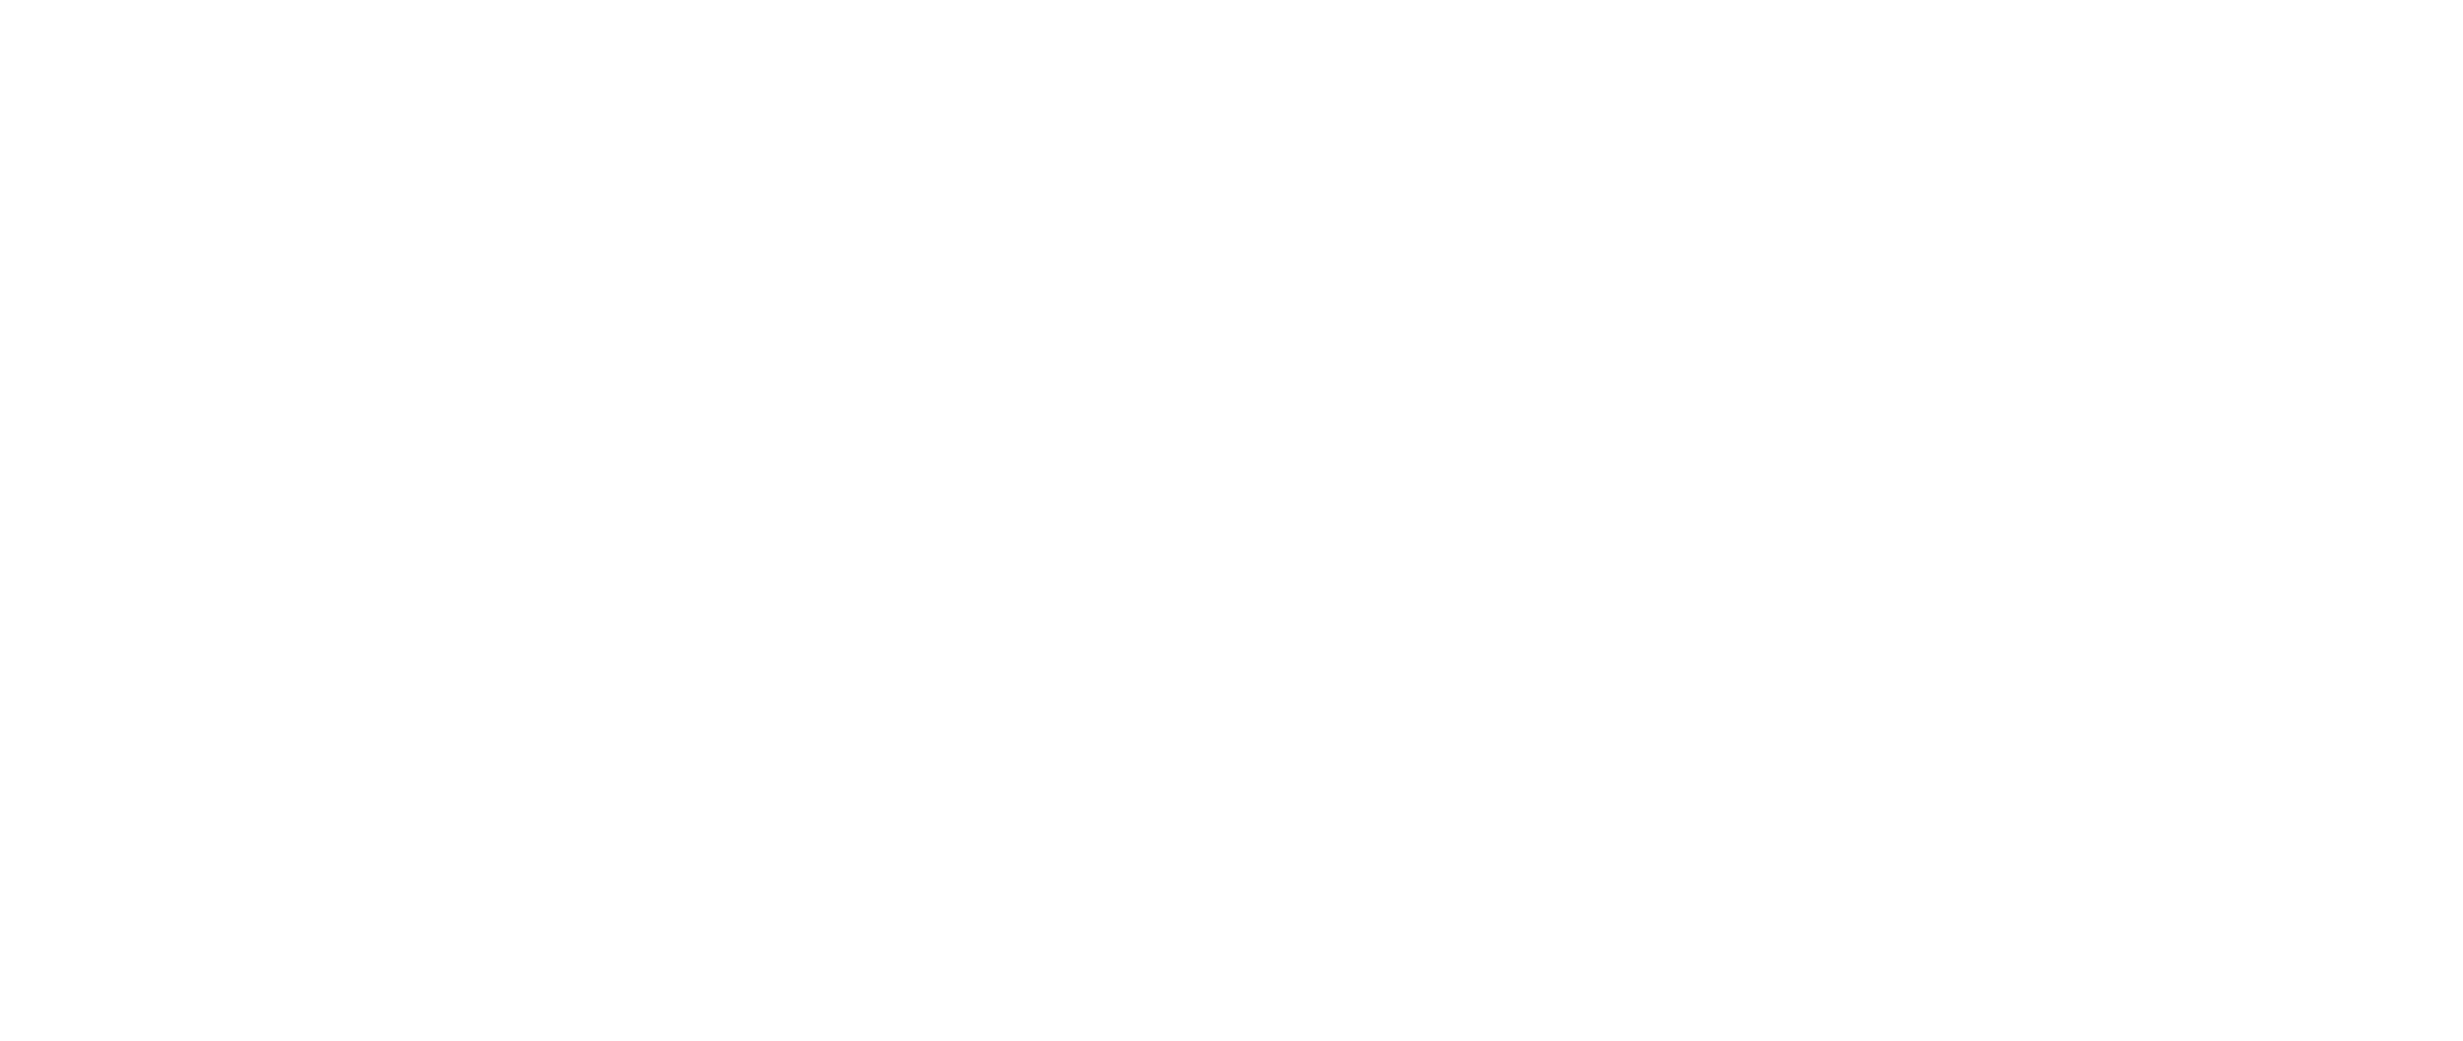 Initiative pour la réconciliation et l'investissement responsable (RRII)